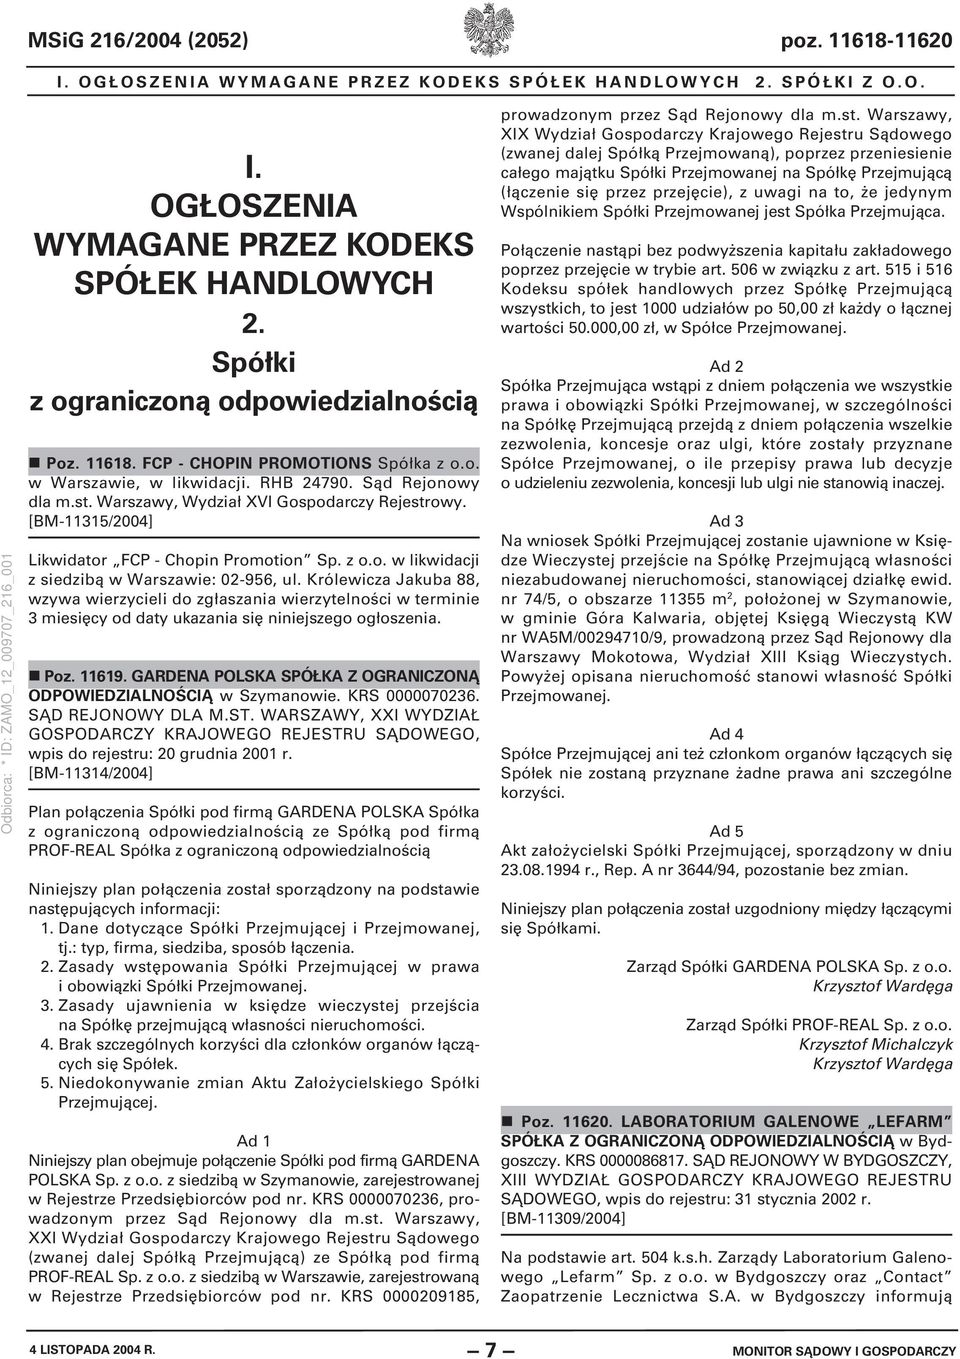 [BM-11315/2004] Likwidator FCP - Chopin Promotion Sp. z o.o. w likwidacji z siedzibą w Warszawie: 02-956, ul.